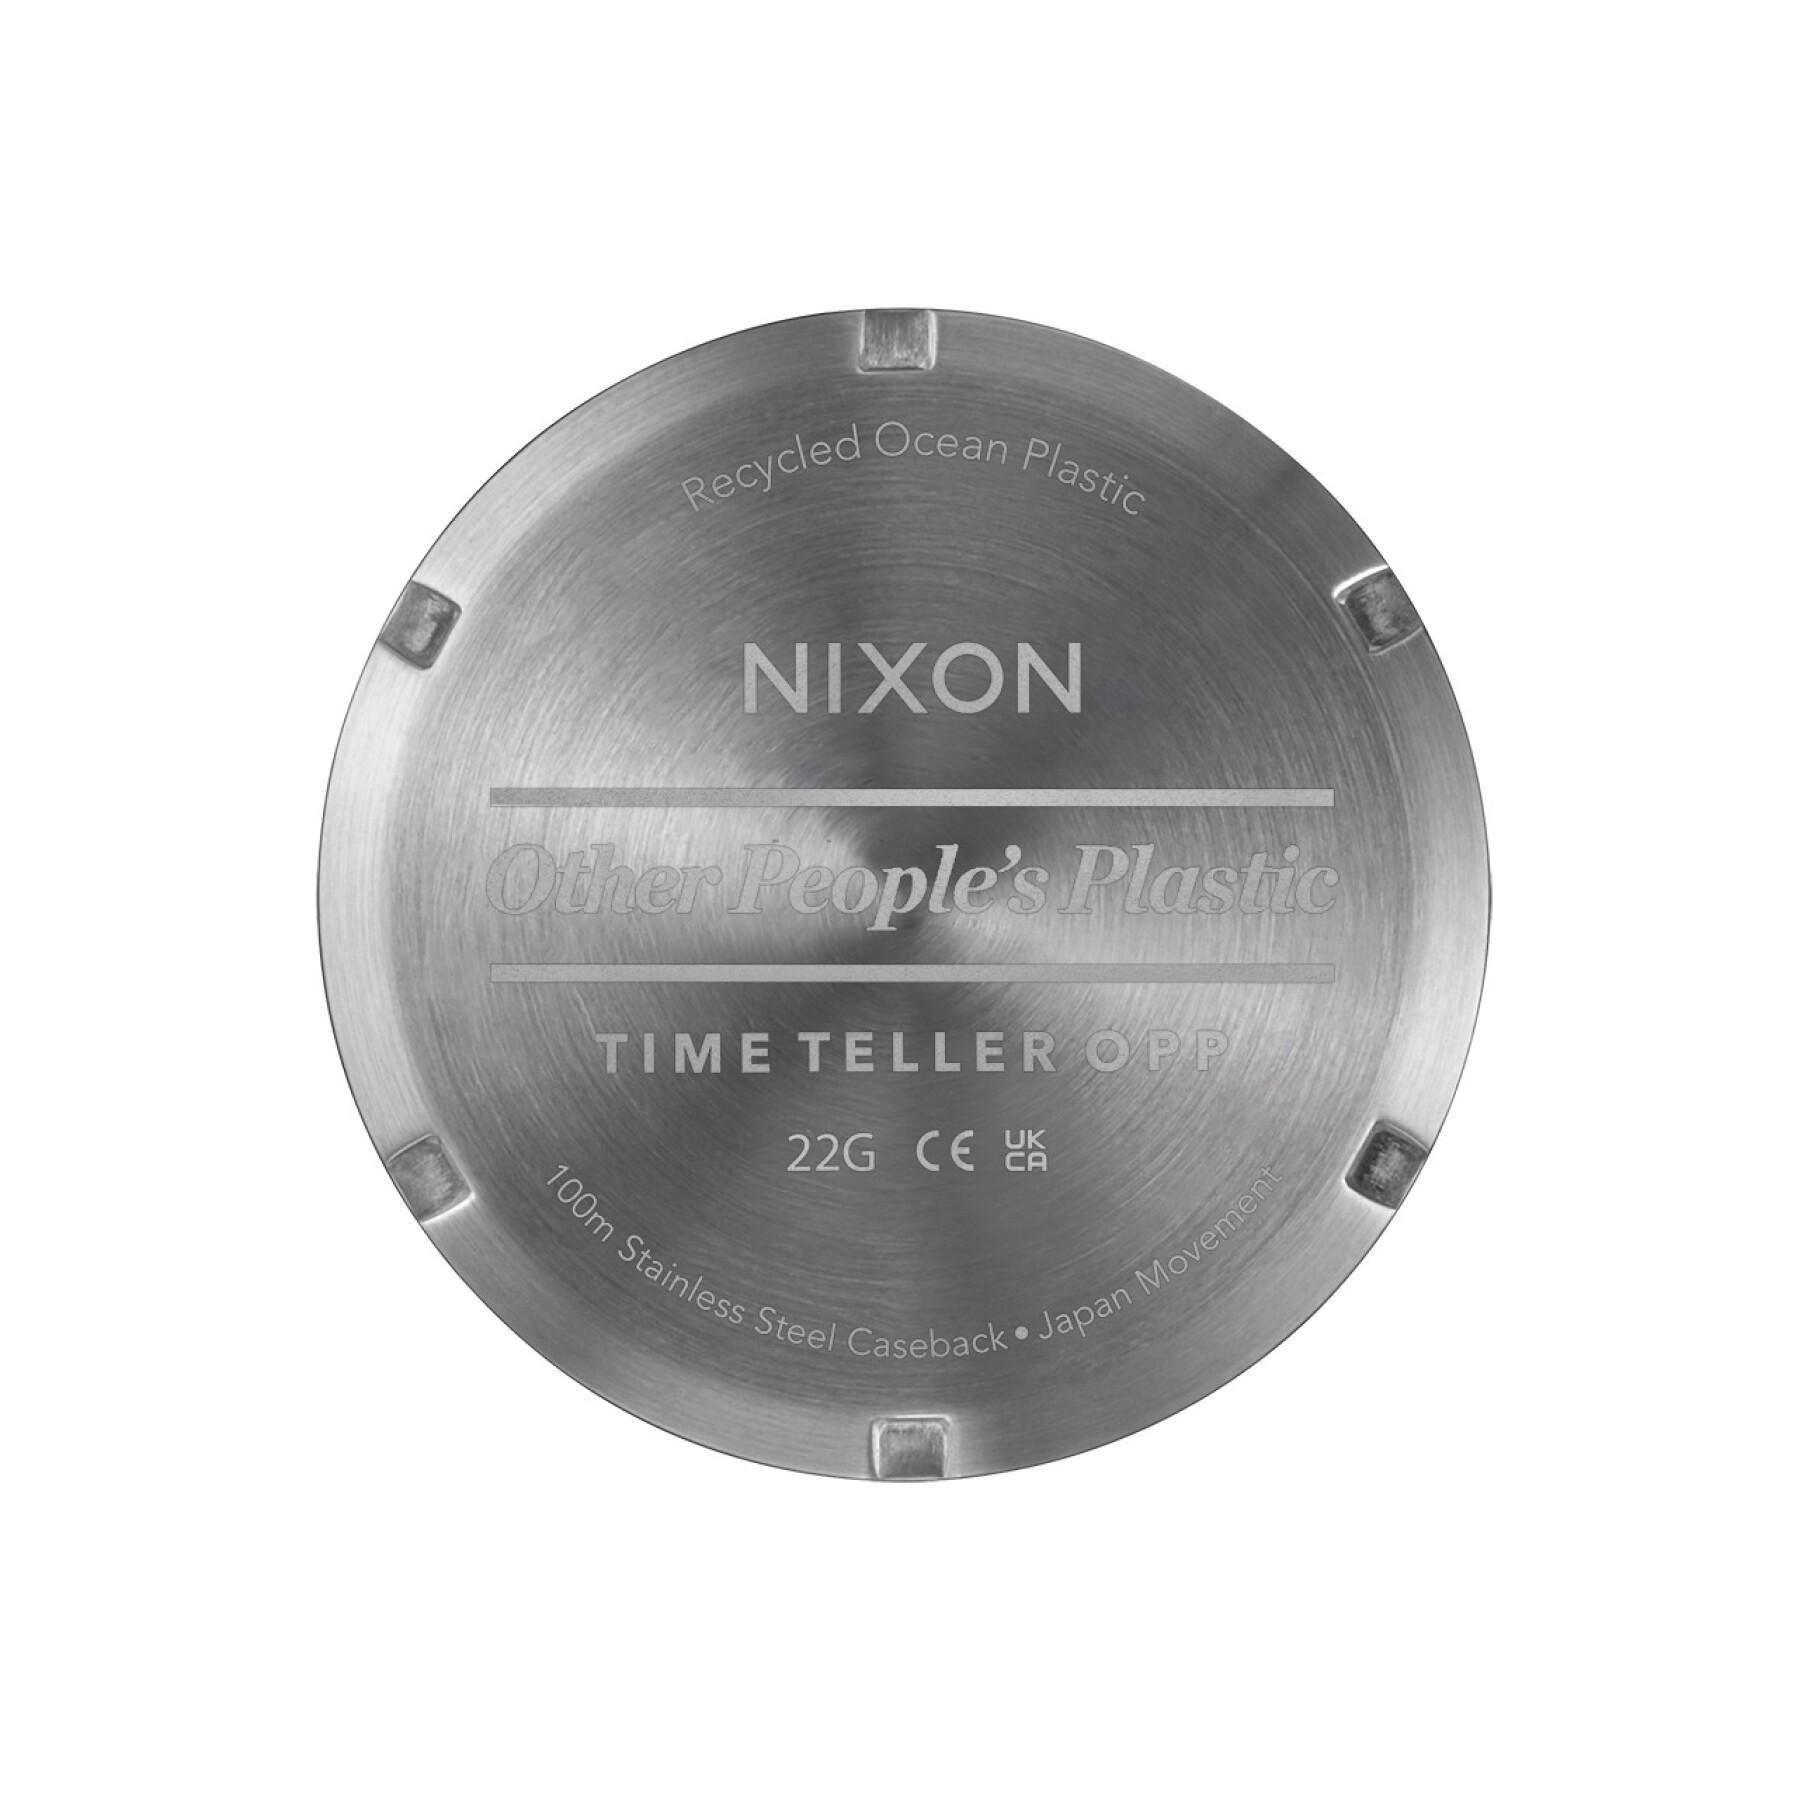 Uhr Nixon Time Teller Opp